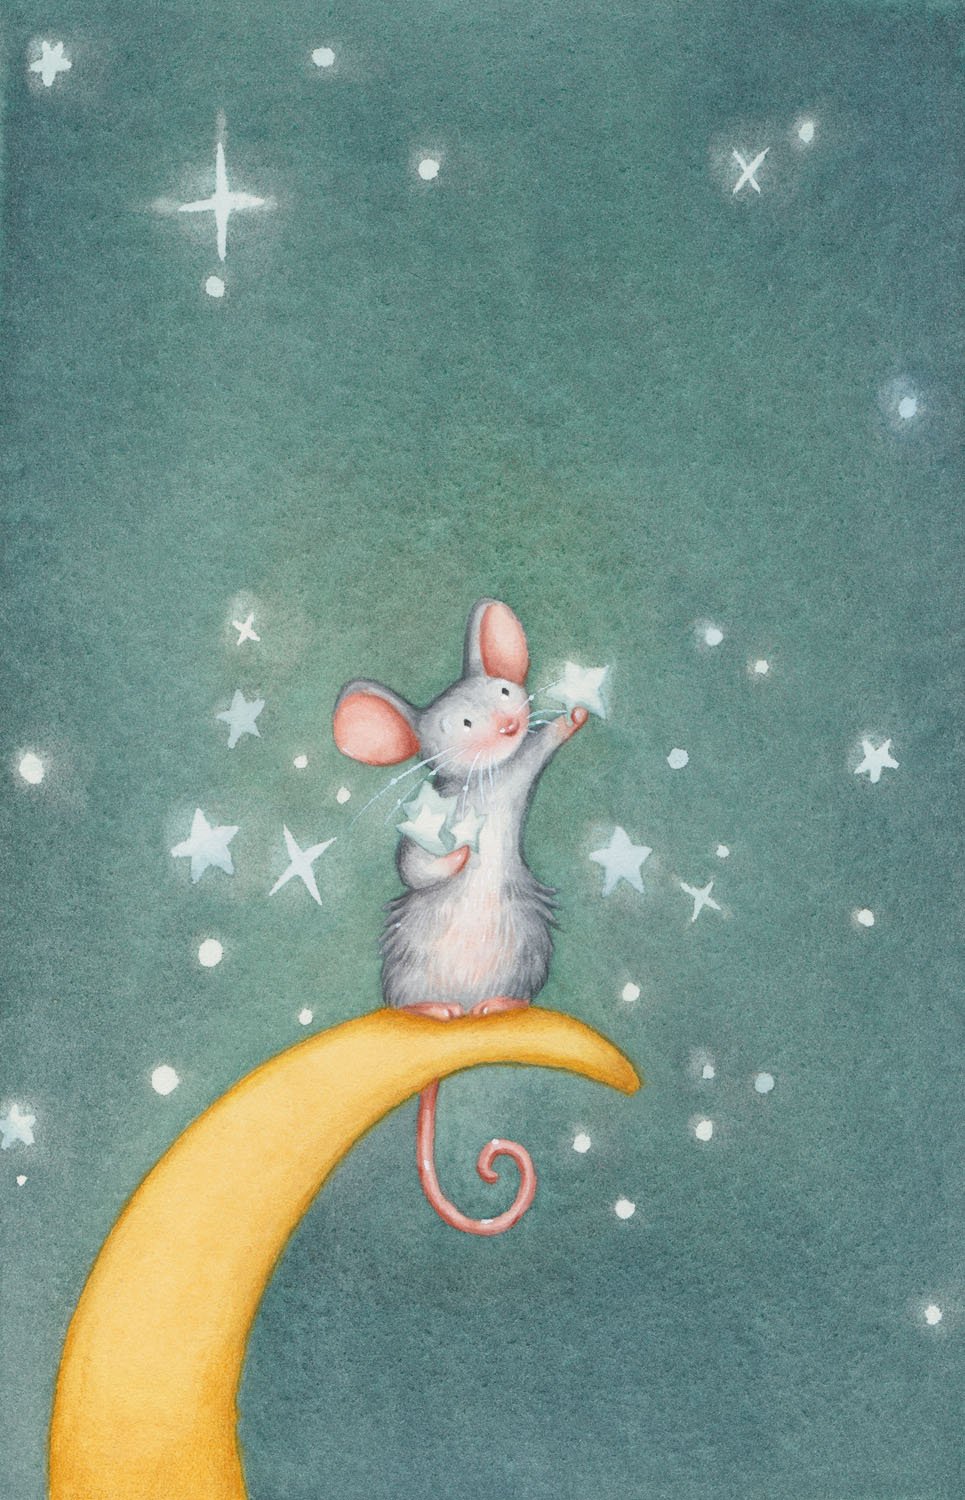 Спокойной мыши. Спокойной ночи мышка. Спокойной ночи мышонок. Доброй ночи мышонок. Сладких снов мышонок.